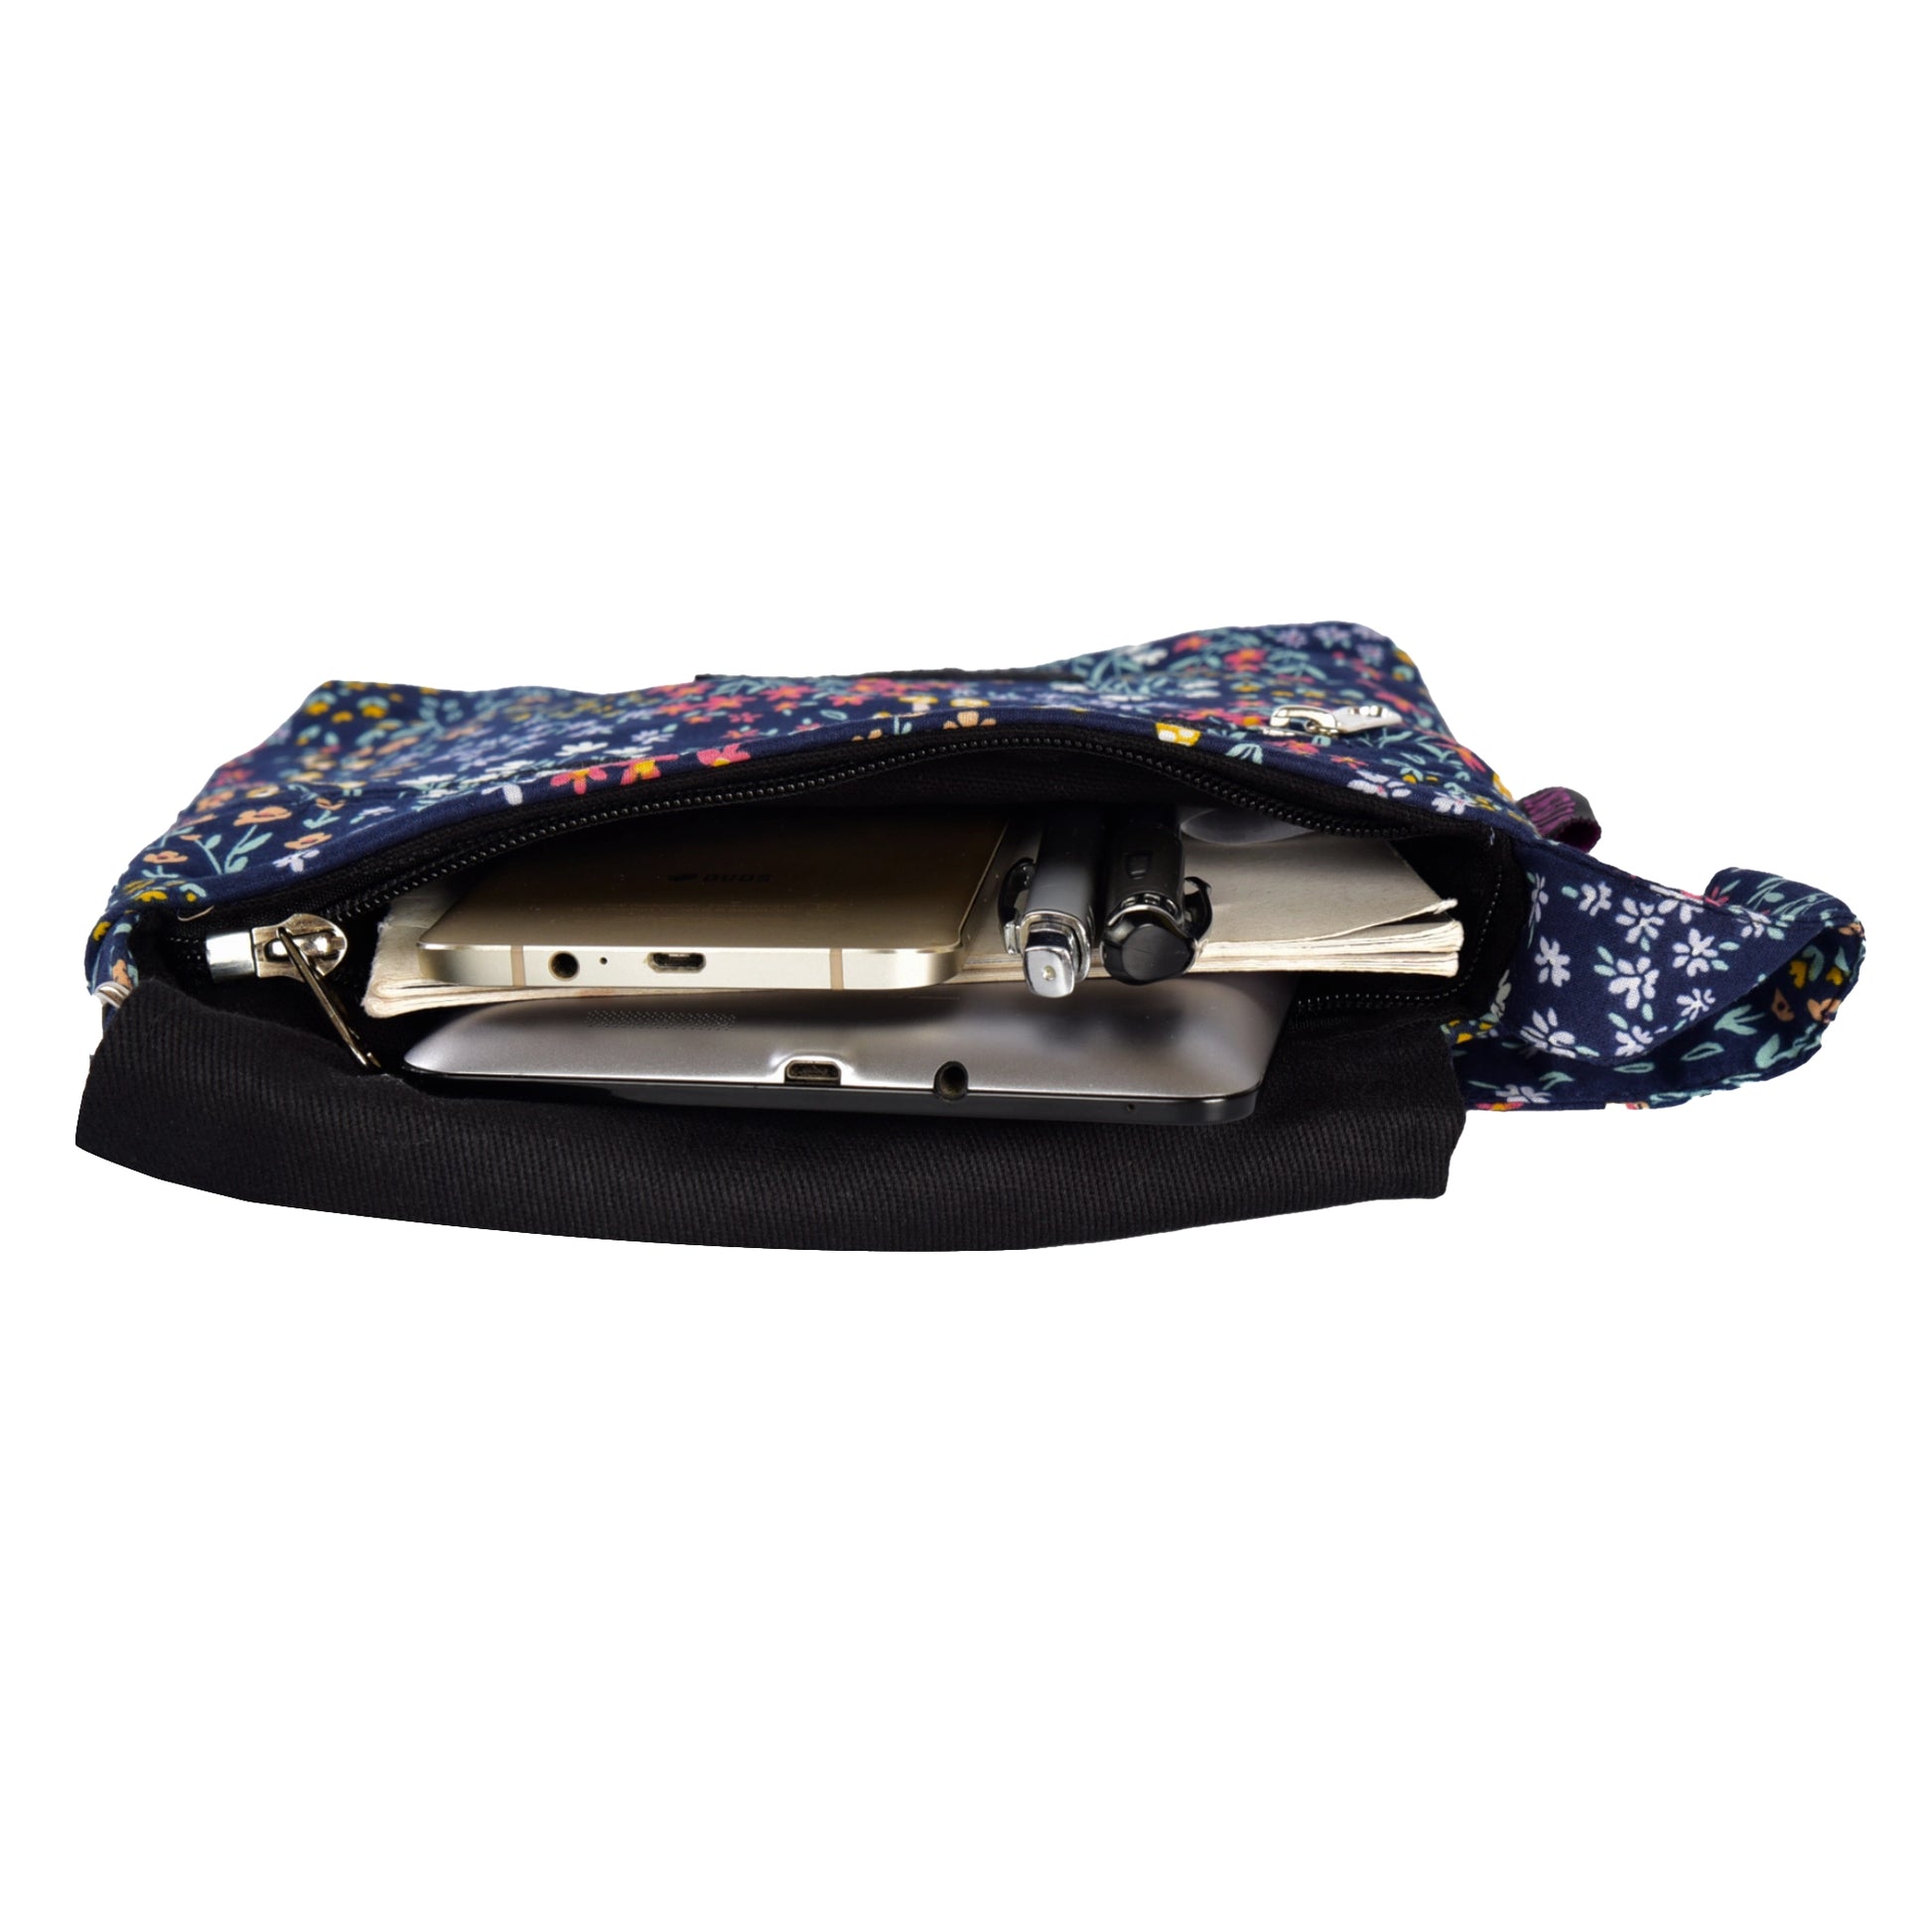 Innenansicht: Kleine Tasche, Umhängetasche aus Baumwolle, dunkelblau mit Blumenmuster. Hauptfach mit integriertem Einsteckfach.